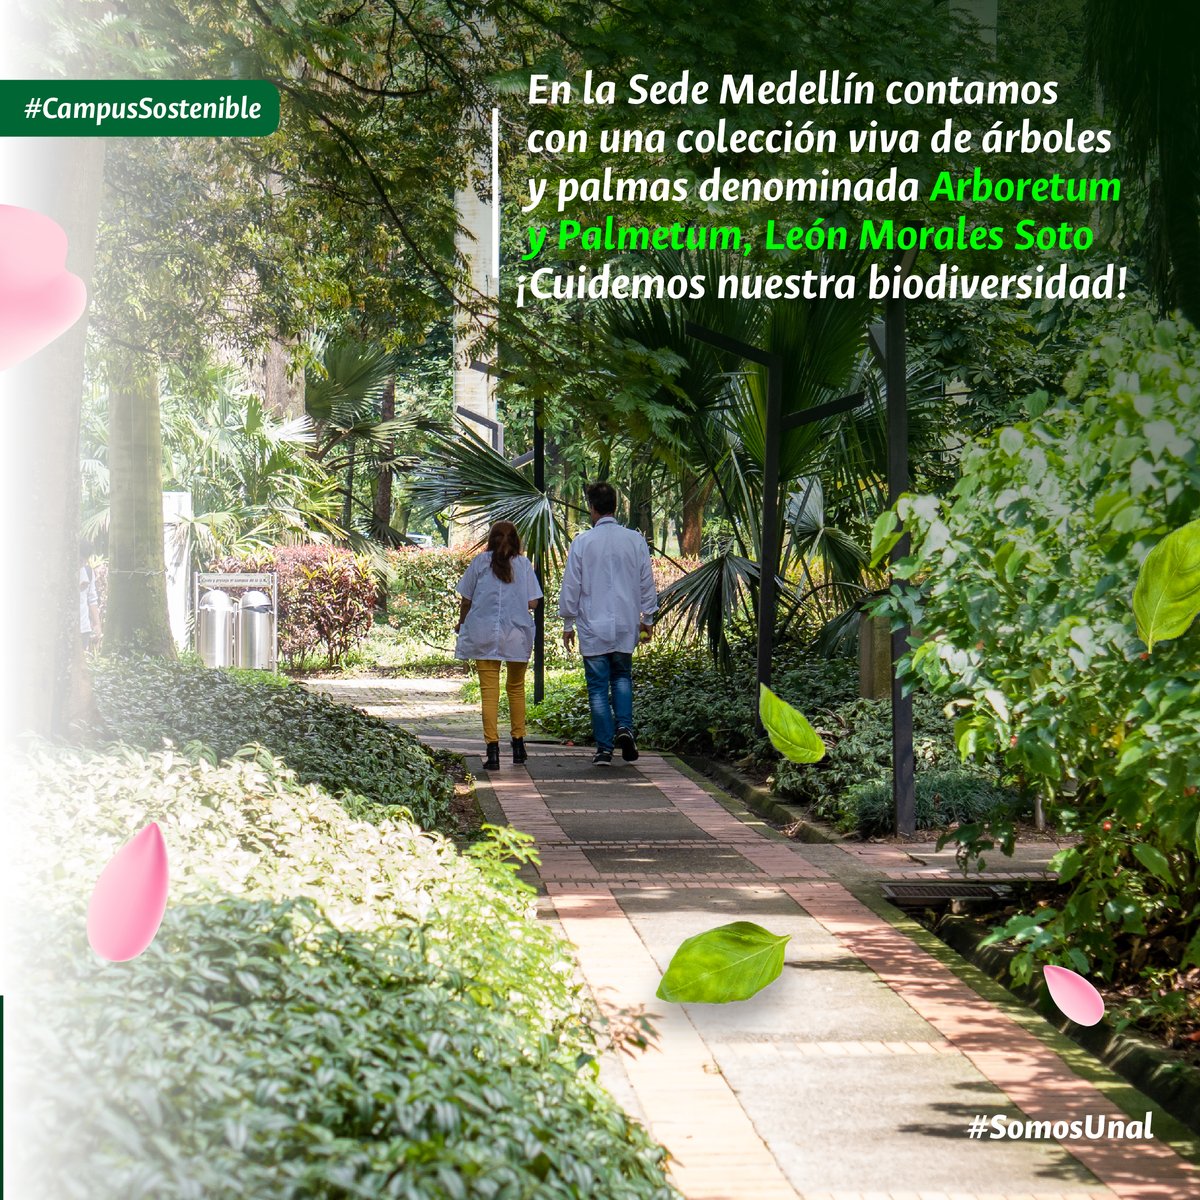 #SomosBiodiversidad La Universidad Nacional Sede @MedellinUNAL desempeña un papel crucial como custodia de la biodiversidad y del conocimiento botánico en la ciudad🌿La sostenibilidad ambiental es un compromiso de todos 💪 #SomosUNAL #SostenibilidadUNAL